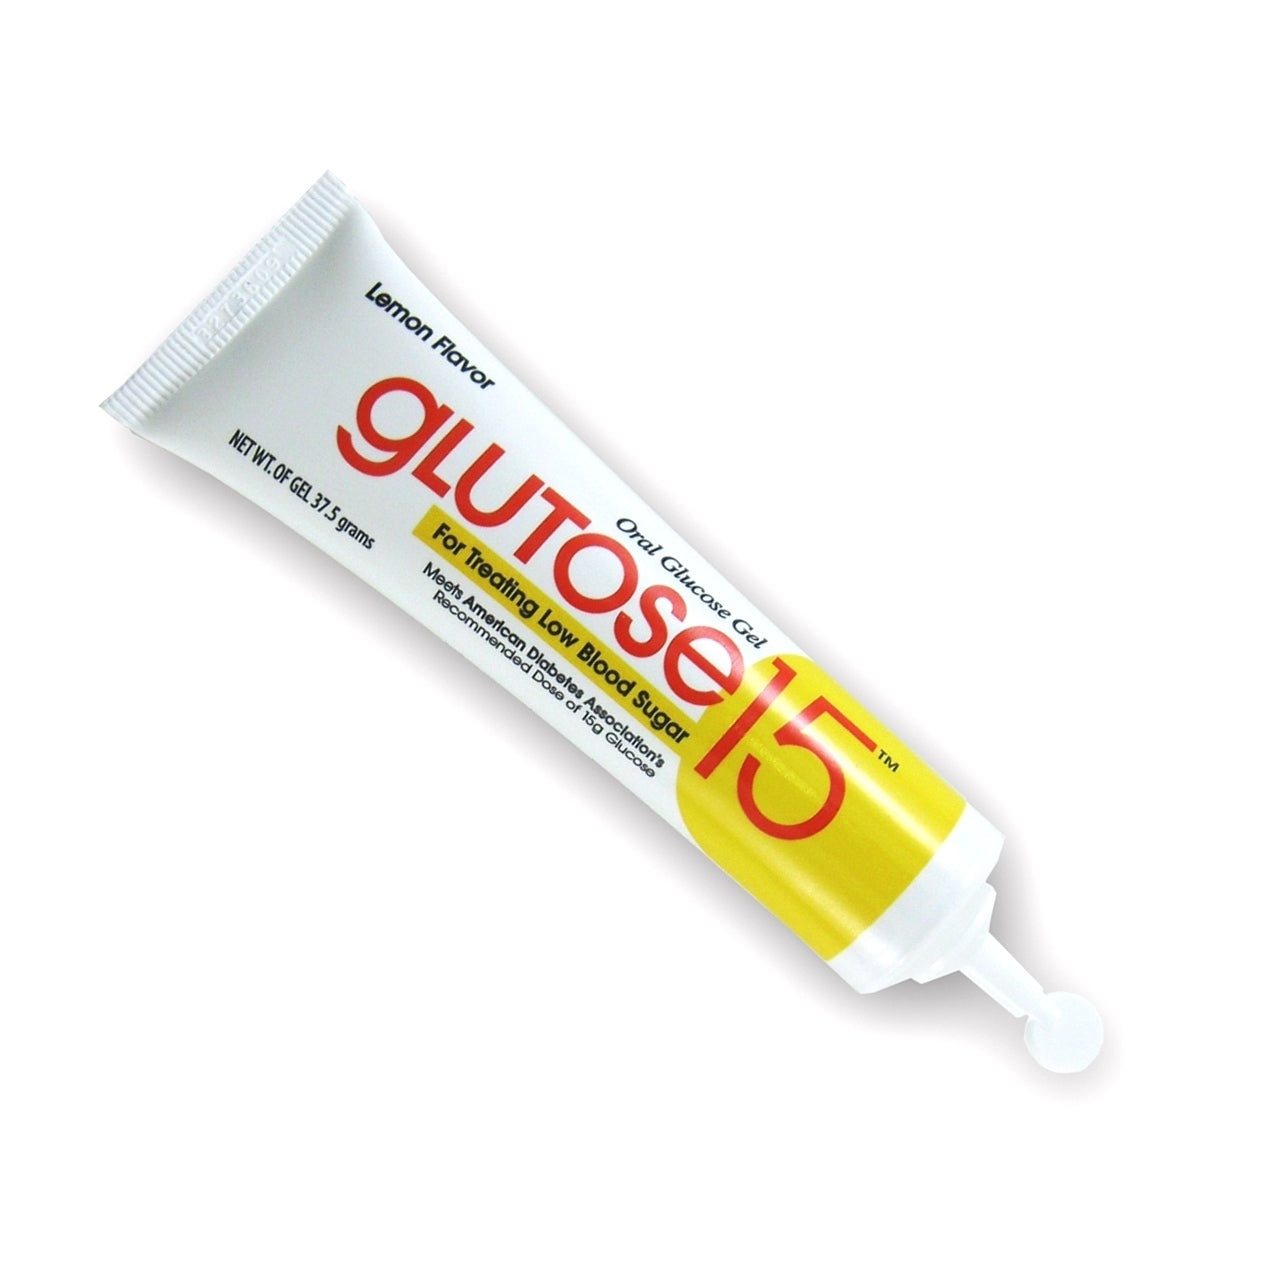 Glutose 15 Oral Gel